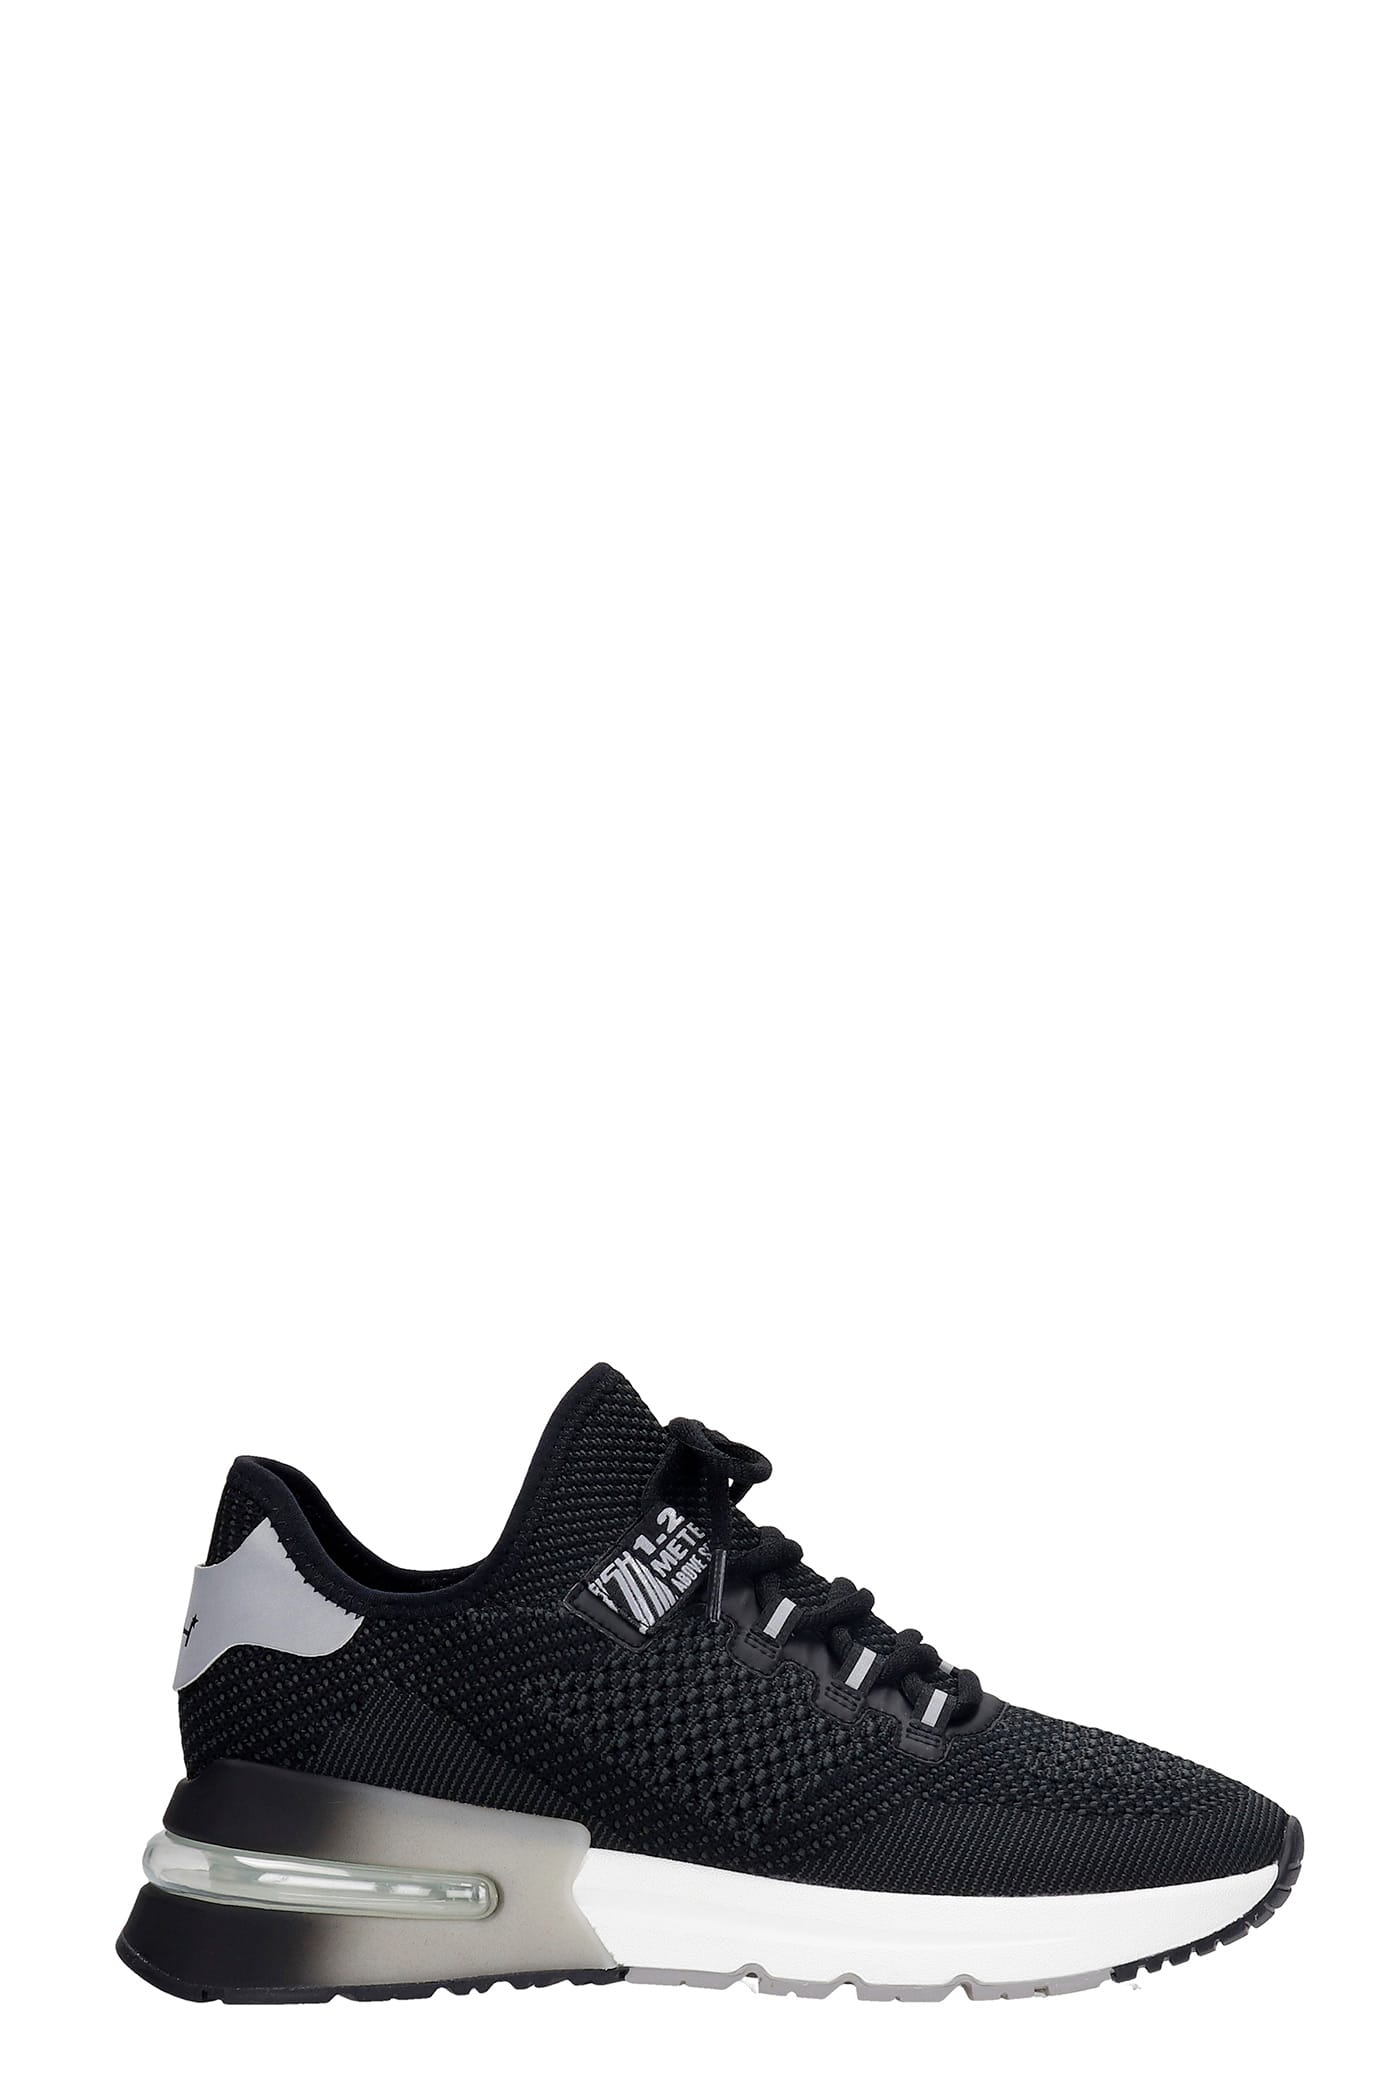 Ash Krush Bis 02 Sneakers In Black Synthetic Fibers